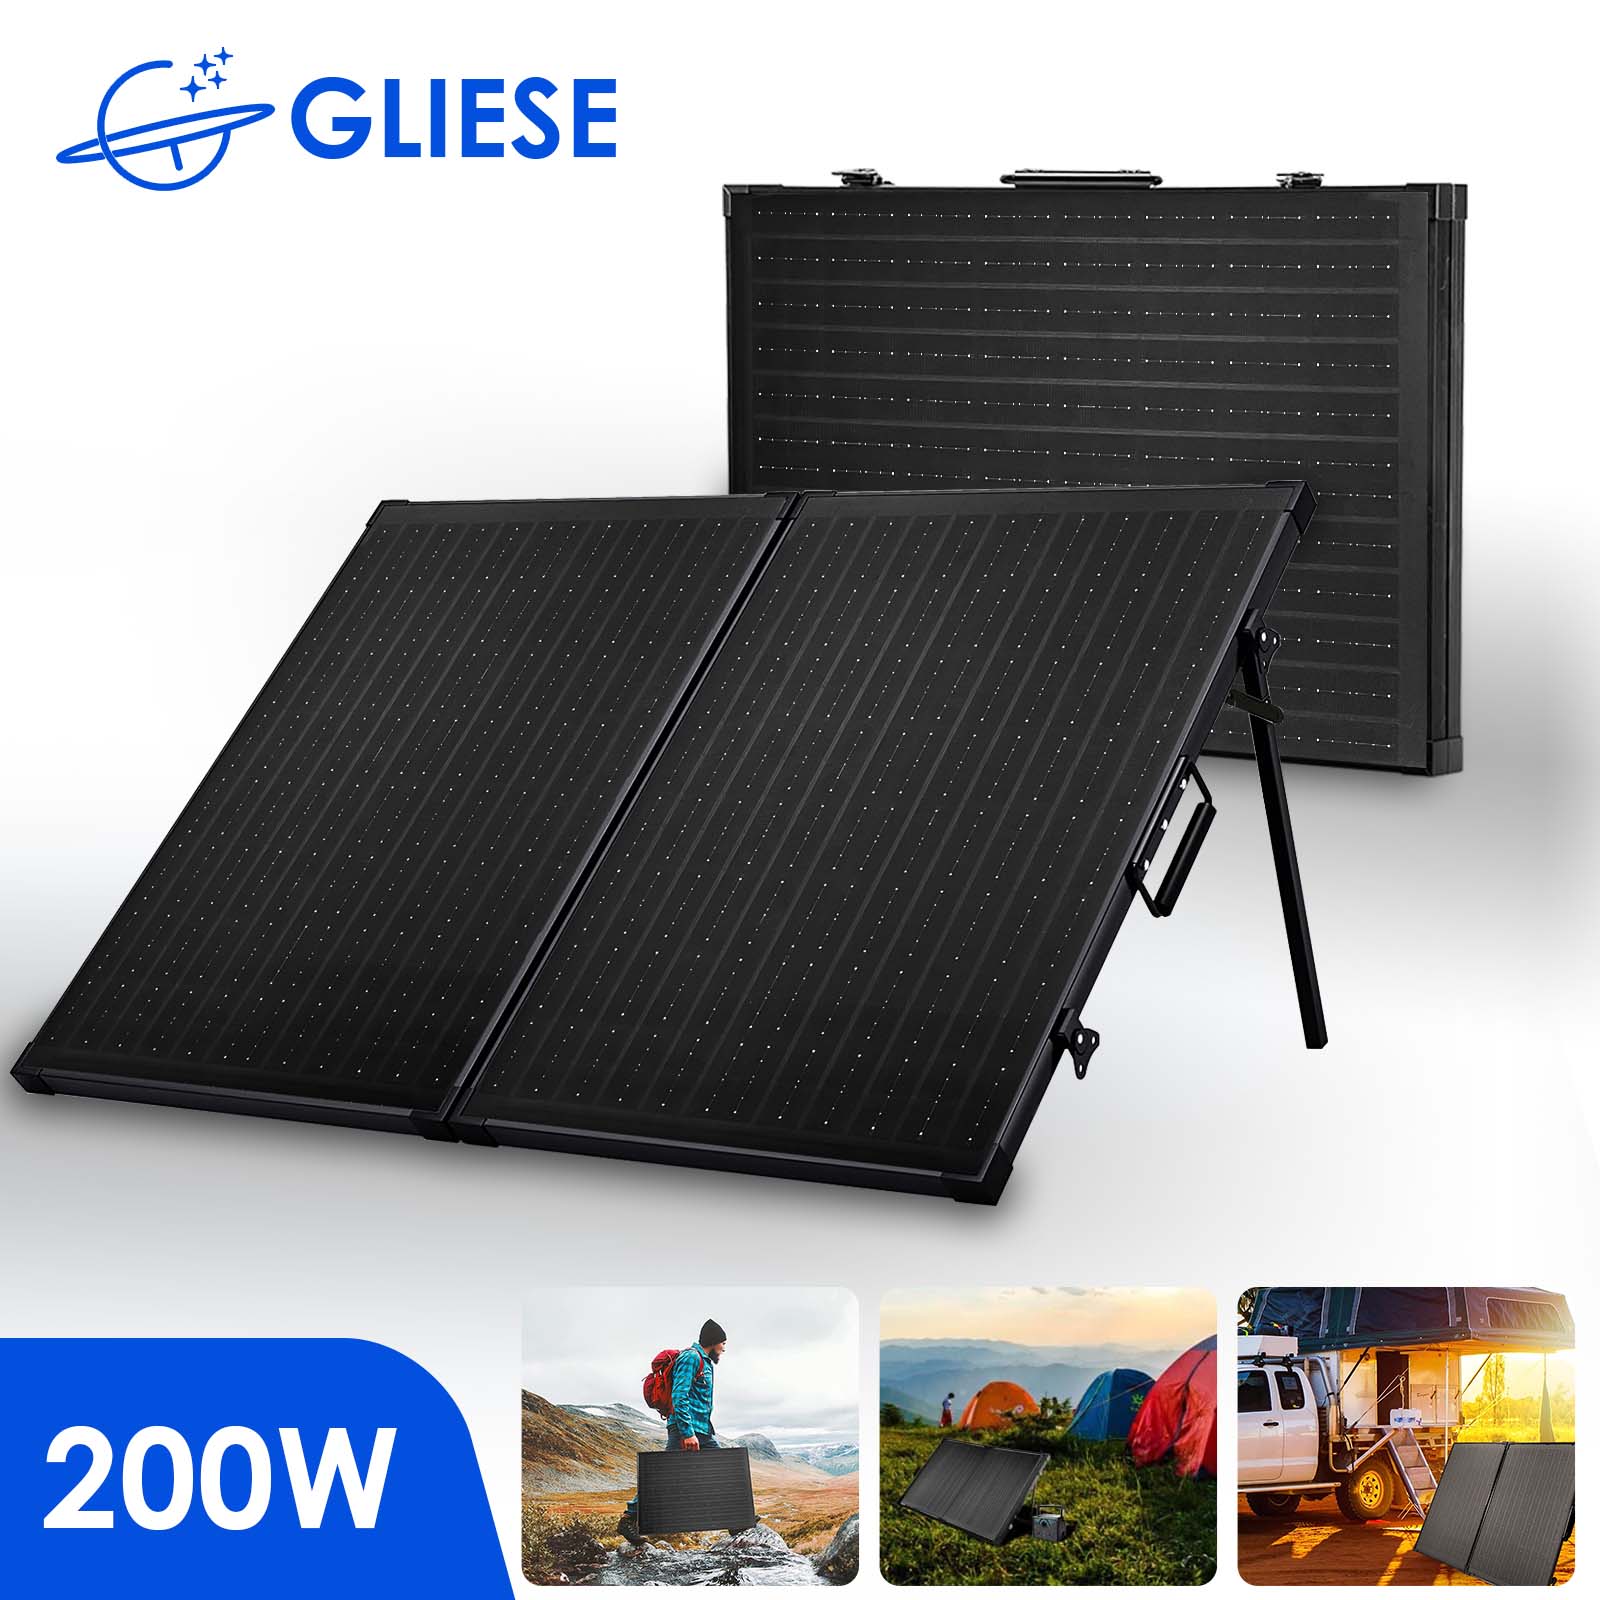 Gliese 200W 12V Faltbar Tragbar Solarpanel